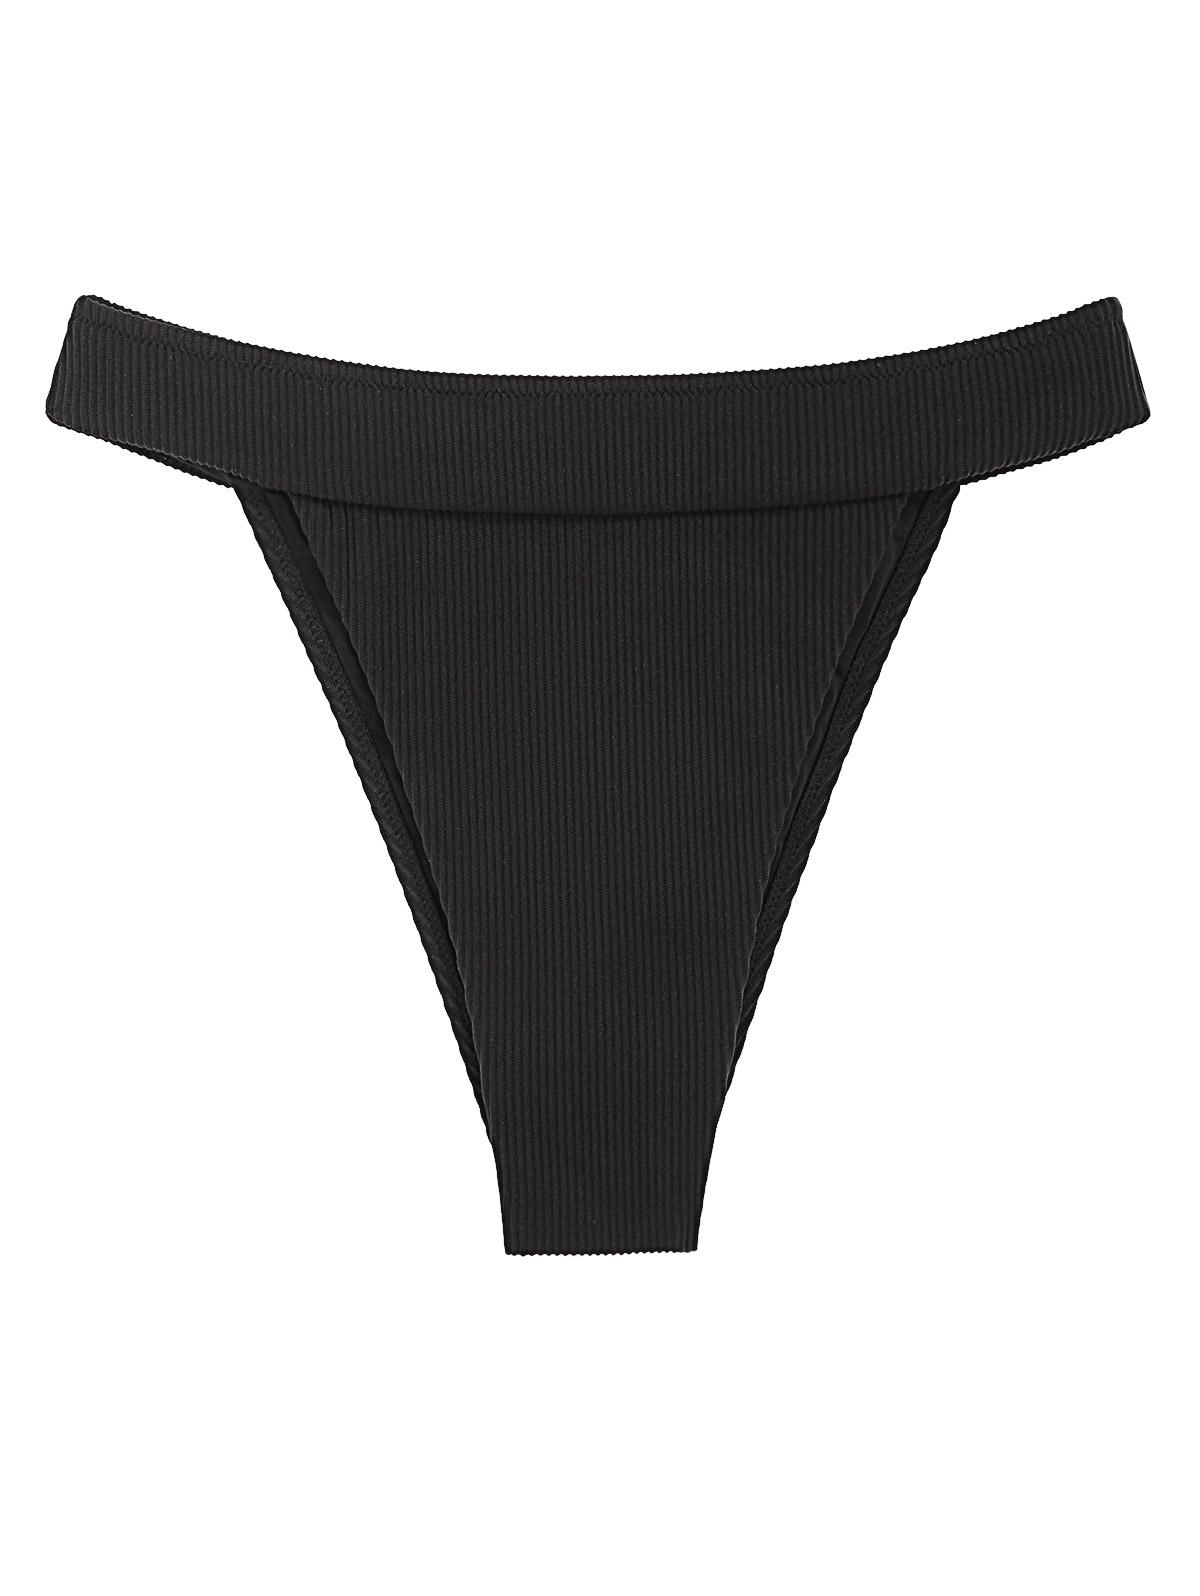 ZAFUL T-cut Textured Bikini Bottom L Black